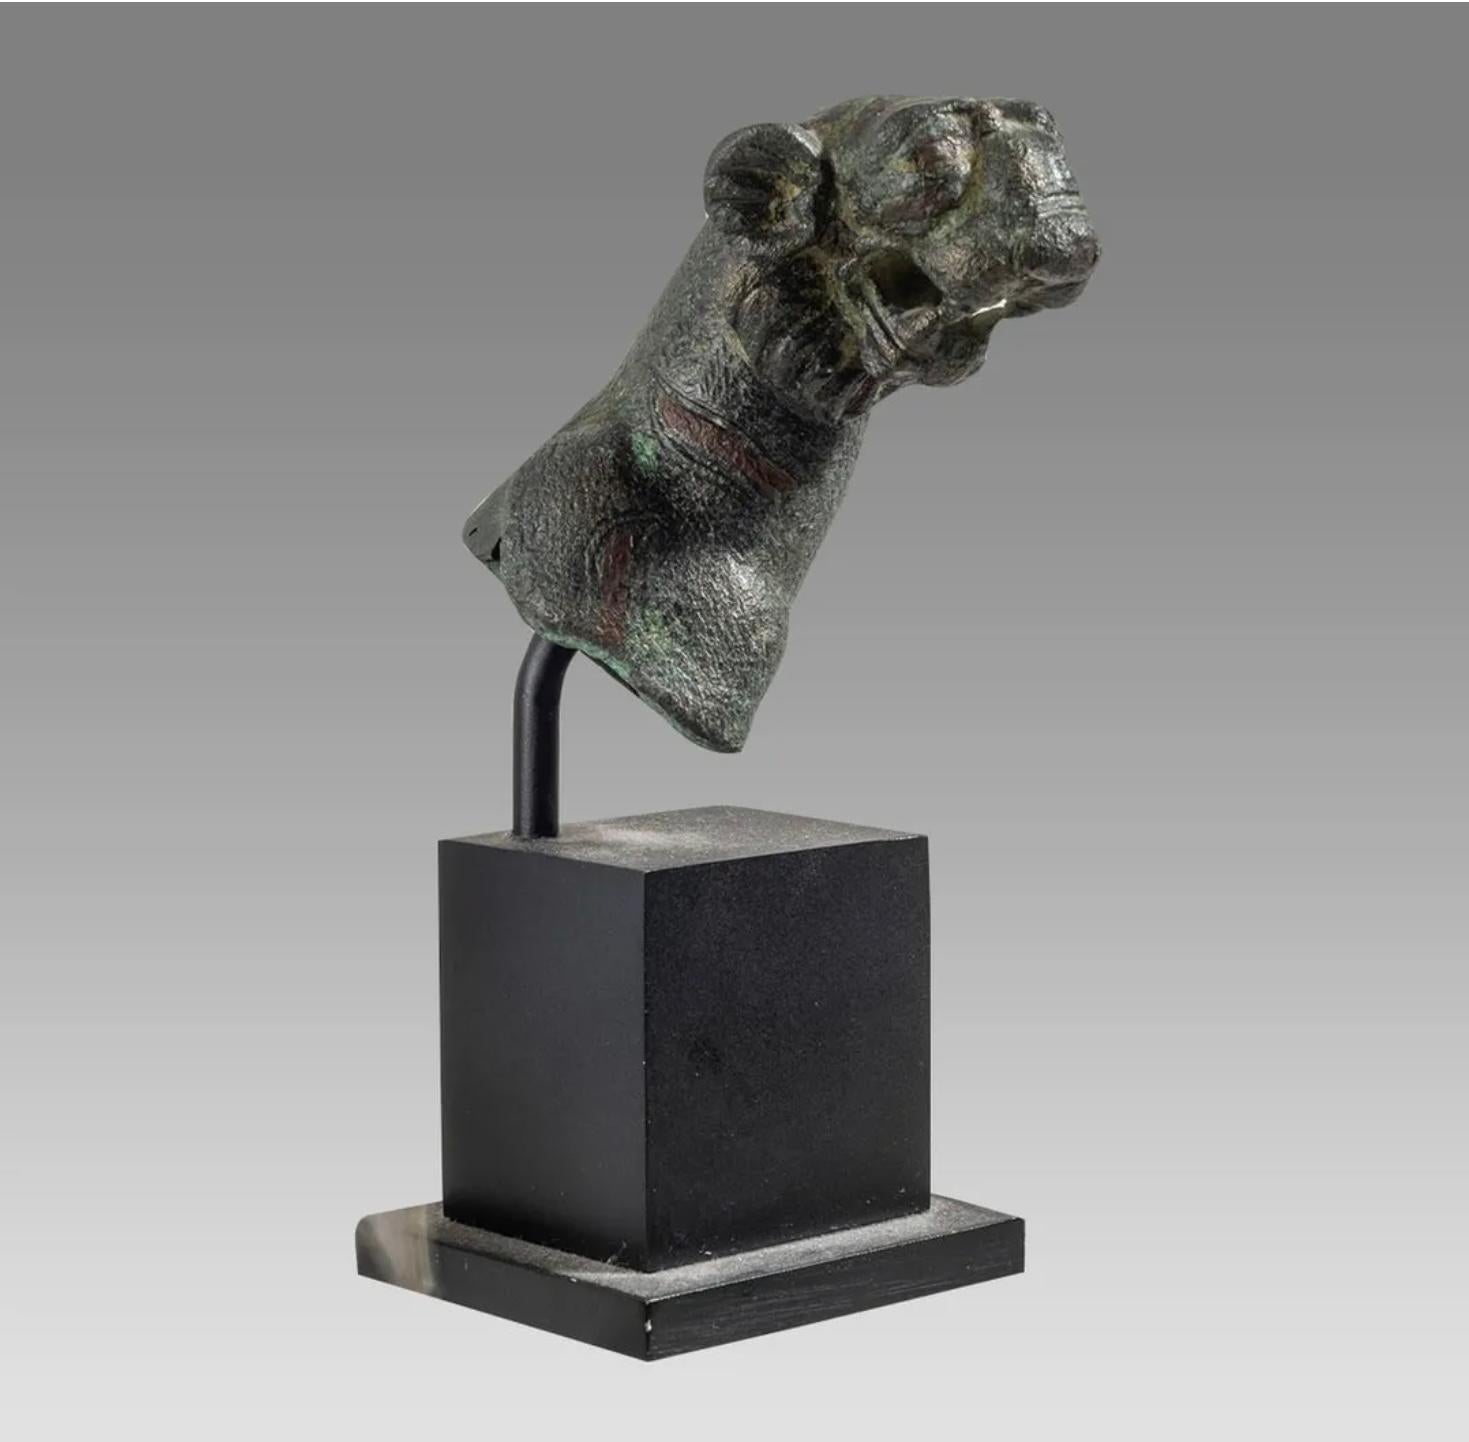 Dies ist ein sehr schöner antiker römischer Bronze-Tigerkopf aus dem 1. bis 2. Jahrhundert nach Christus.   Der antike römische Bronzeguss-Kopf des Tigers hat eine sehr gute Gussqualität und hervorragende Details. Der Kopf des Tigers selbst ist 2